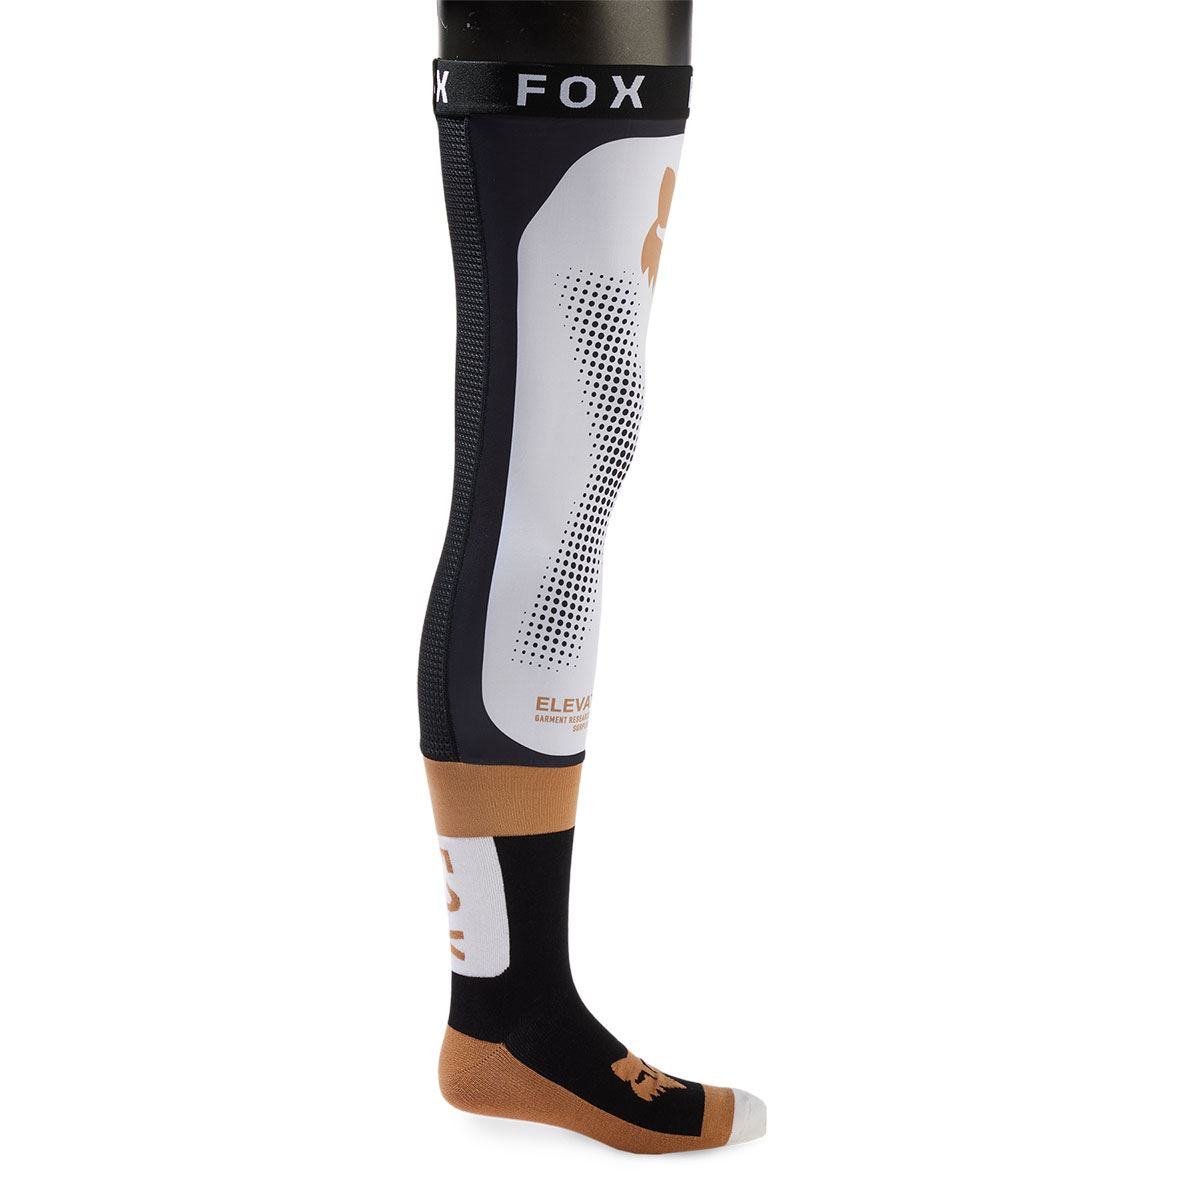 ダートフリーク FOX 31335-018-L ニーブレースソックス ブラック/ホワイト L バイク ライディング インナー 靴下 通気性